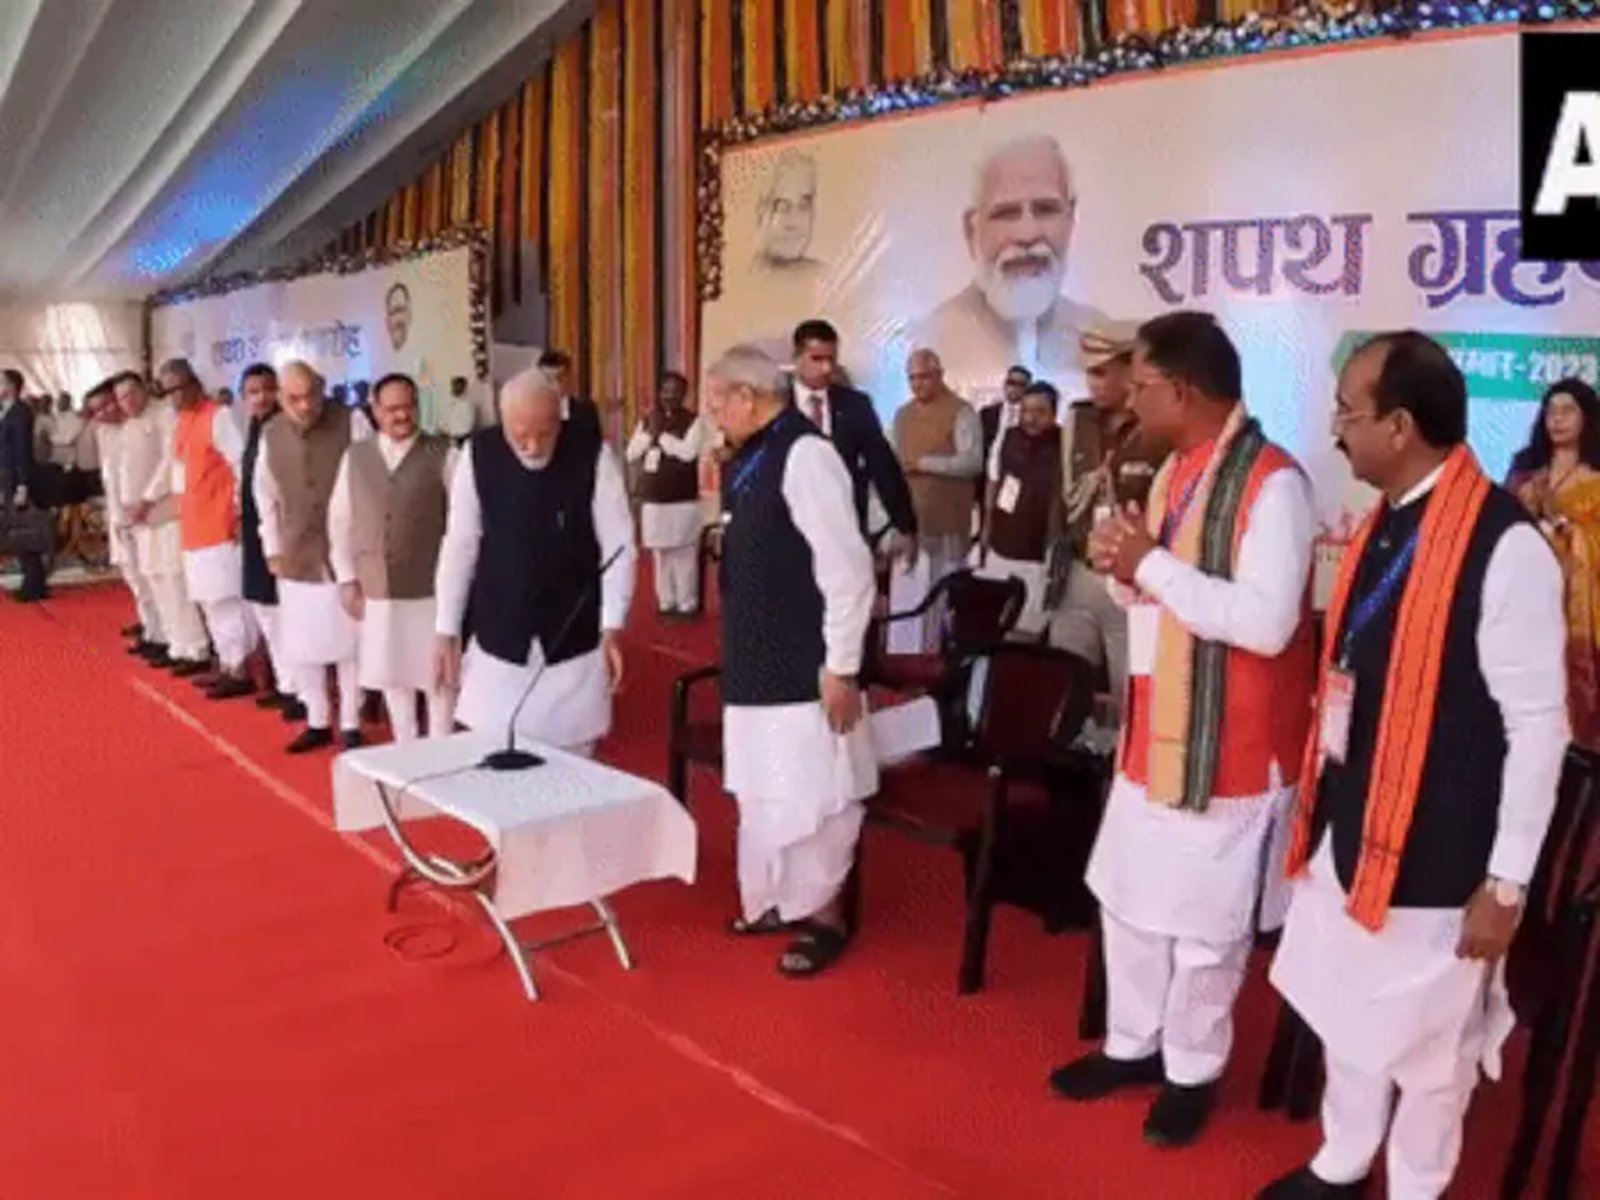 मुख्यमंत्री शपथ समारोह में कुछ अलग अंदाज में दिखे PM मोदी, वीडियो ने जीत लिया लोगो का दिल,